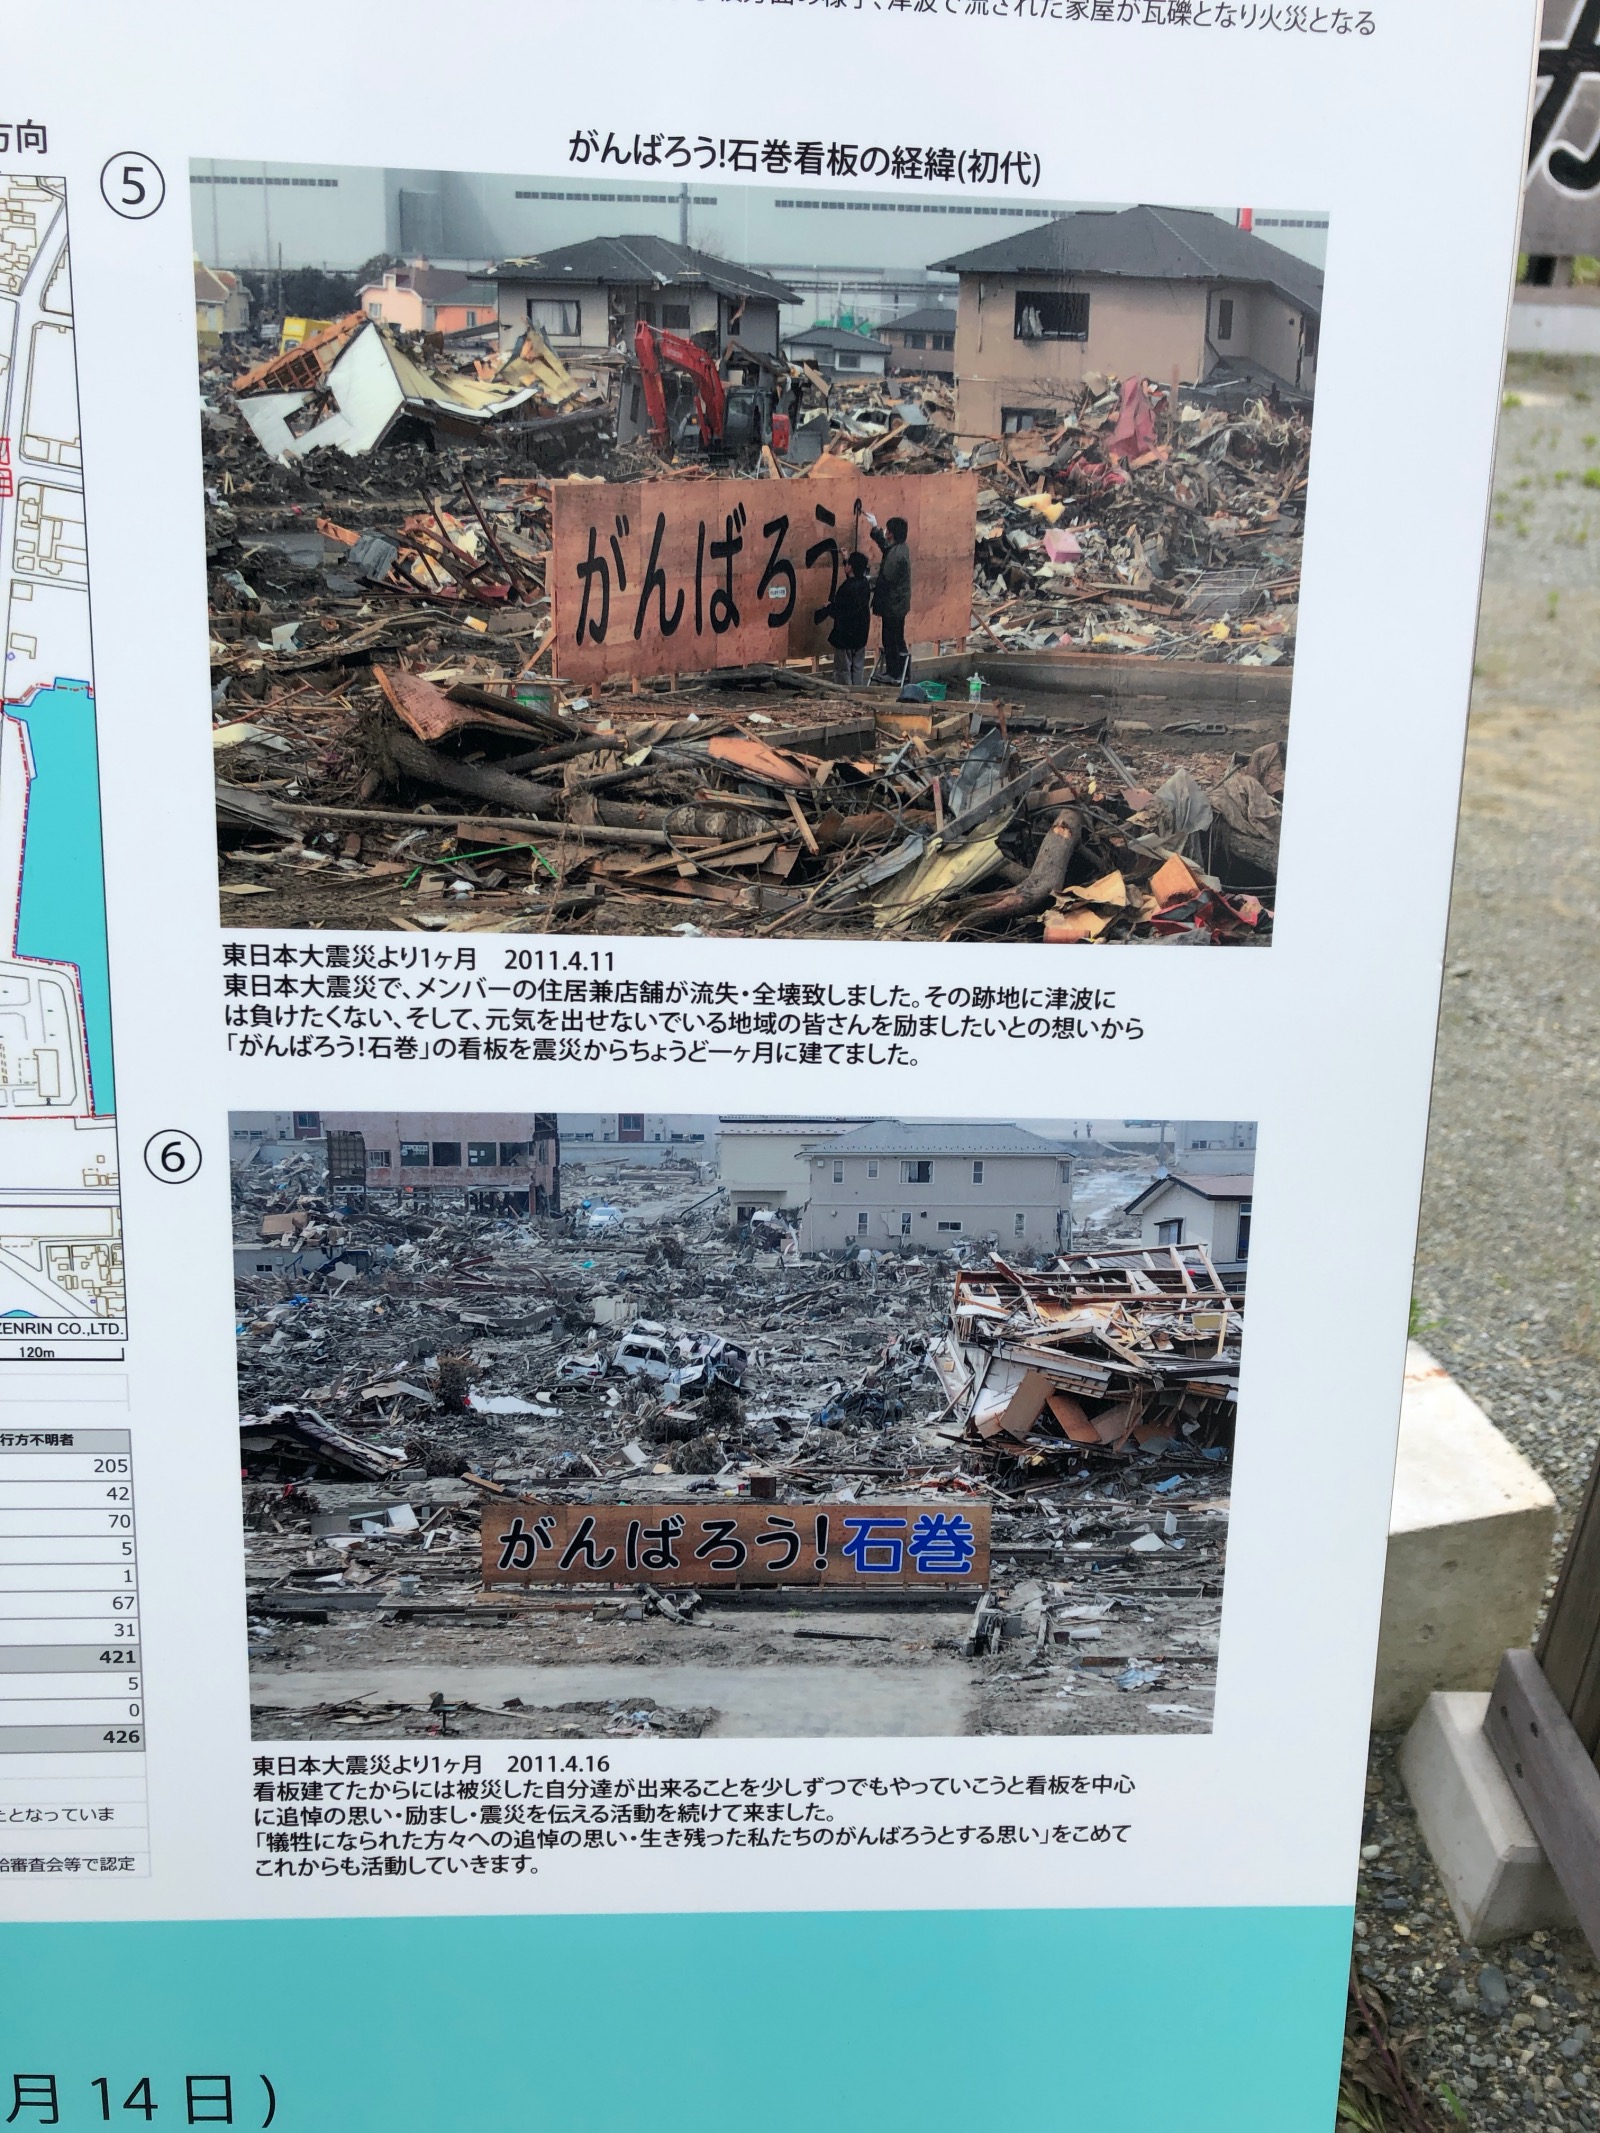 Nur einen Monat nach der Tsunami-Katastrophe entstand die Tafel, die seither mehrmals erneuert wurde.